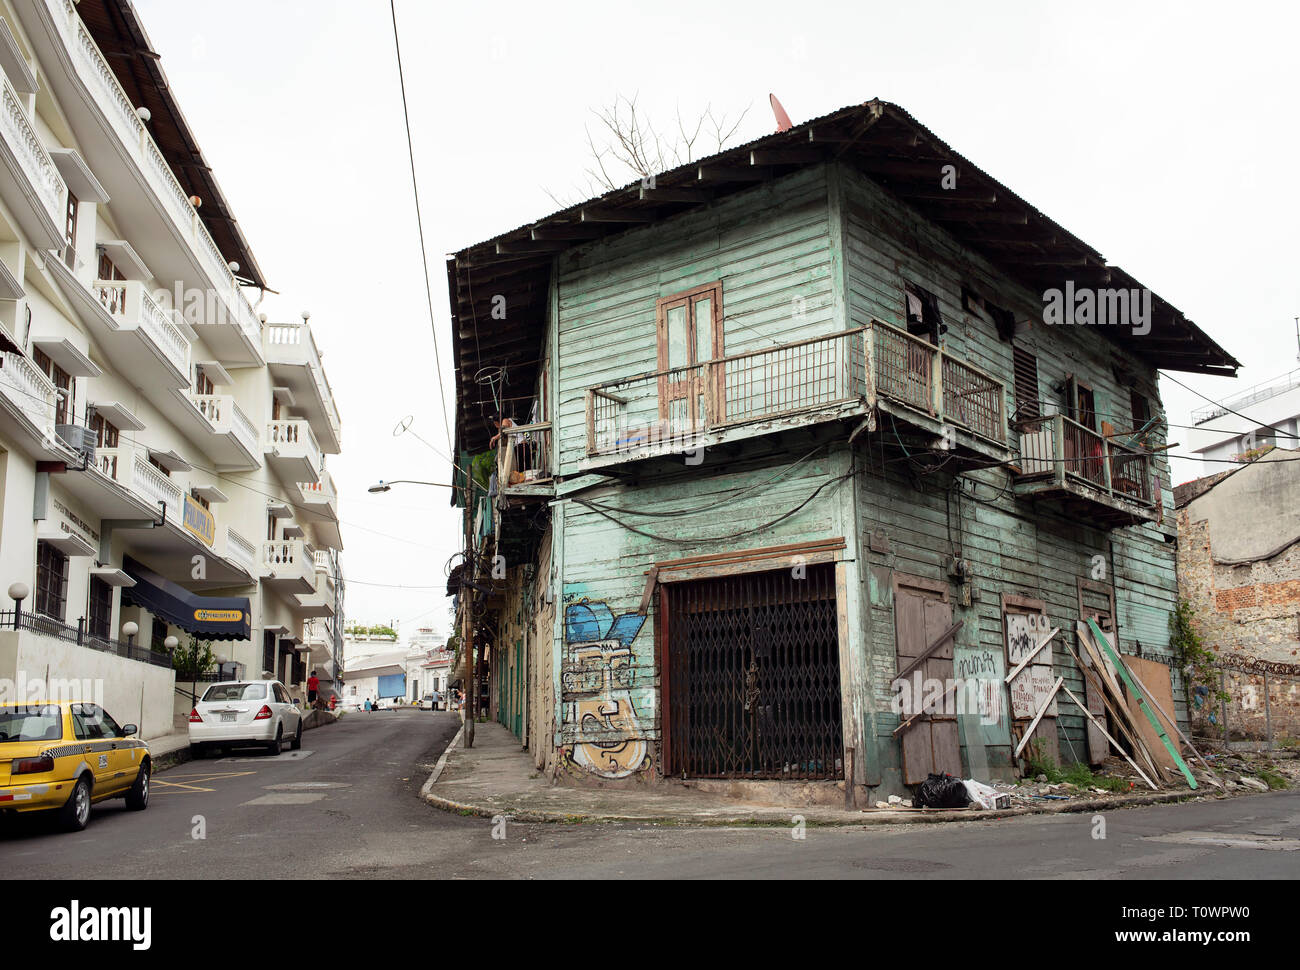 Gentrification dans la ville historique : maison de RamManille par rapport à un bâtiment résidentiel moderne. Casco Viejo (Casco Antiguo), Panama City, Panama. Octobre 2018 Banque D'Images